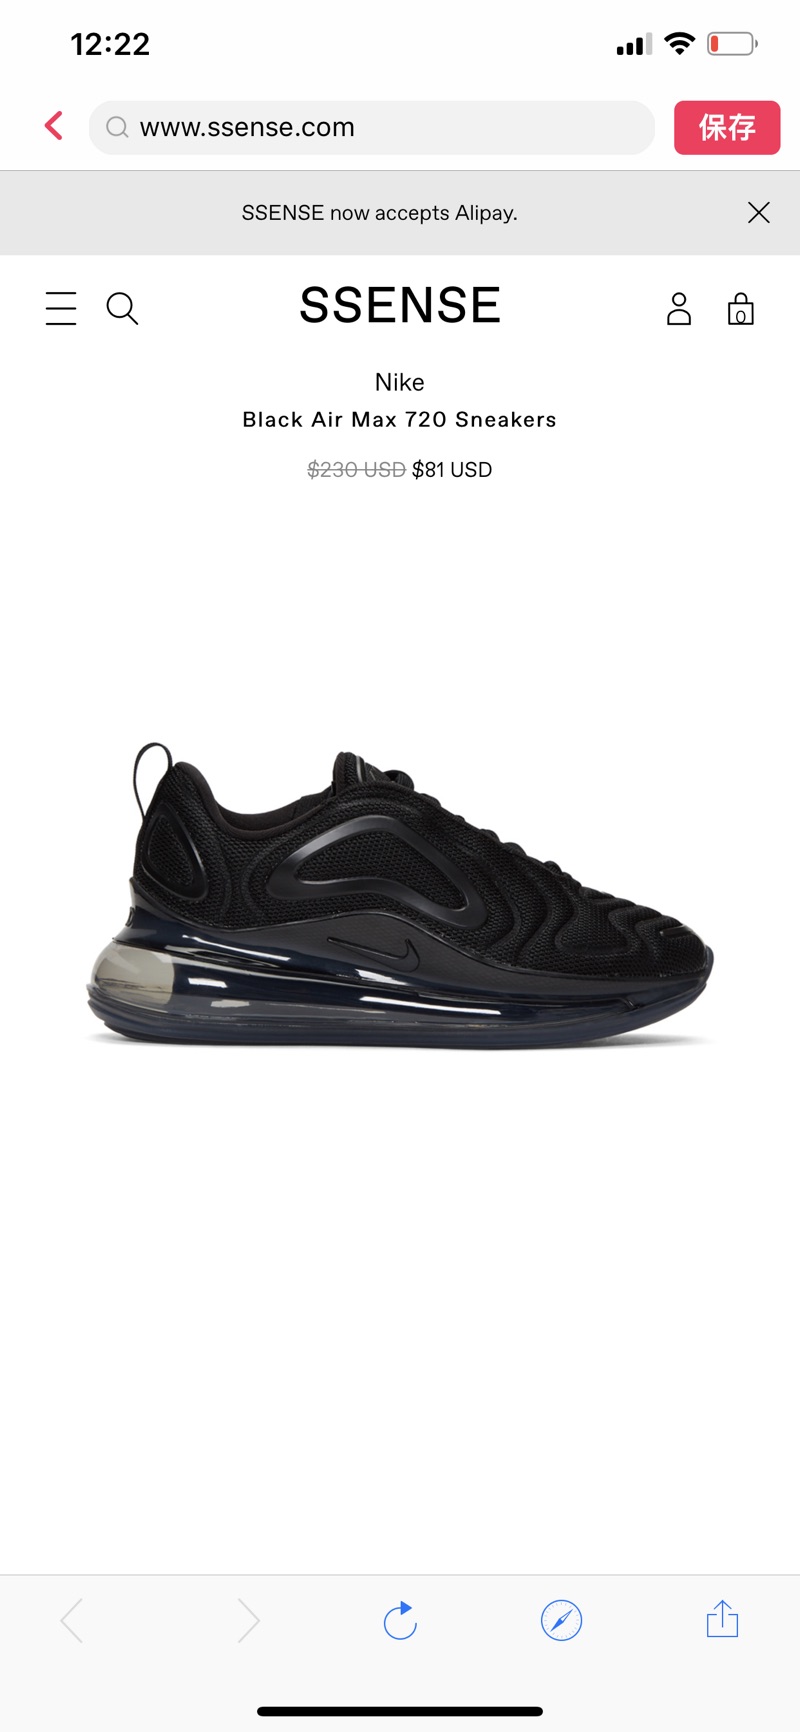 Nike: Black Air Max 720 Sneakers 运动鞋